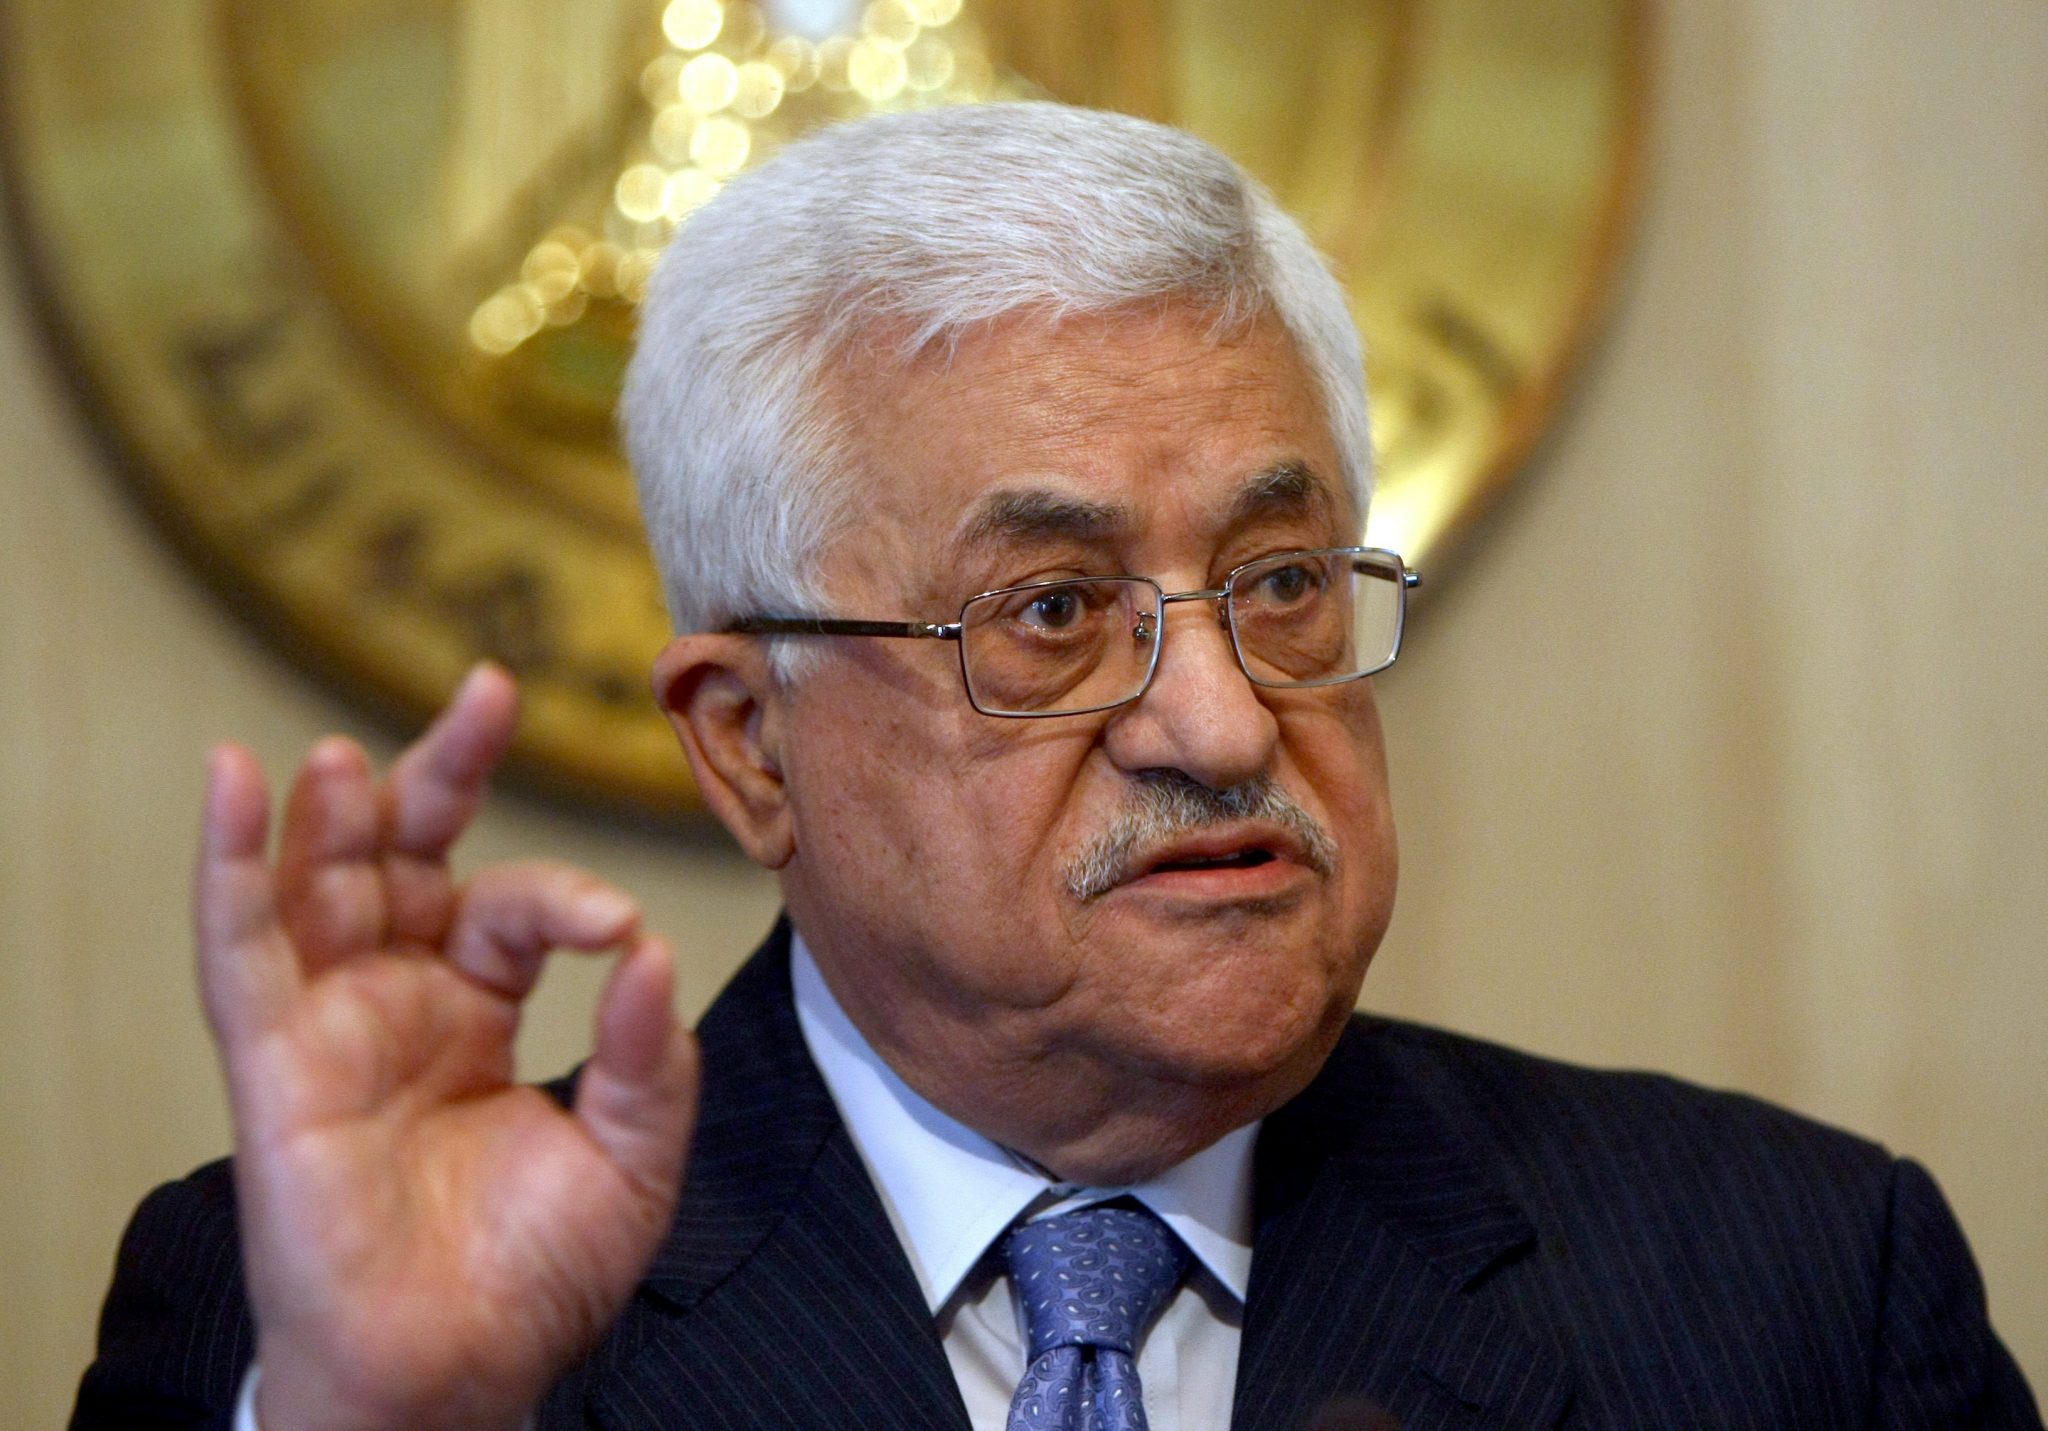   الرئيس الفلسطيني يؤكد مساندته للشعب المصري ضد الإرهاب الأعمى